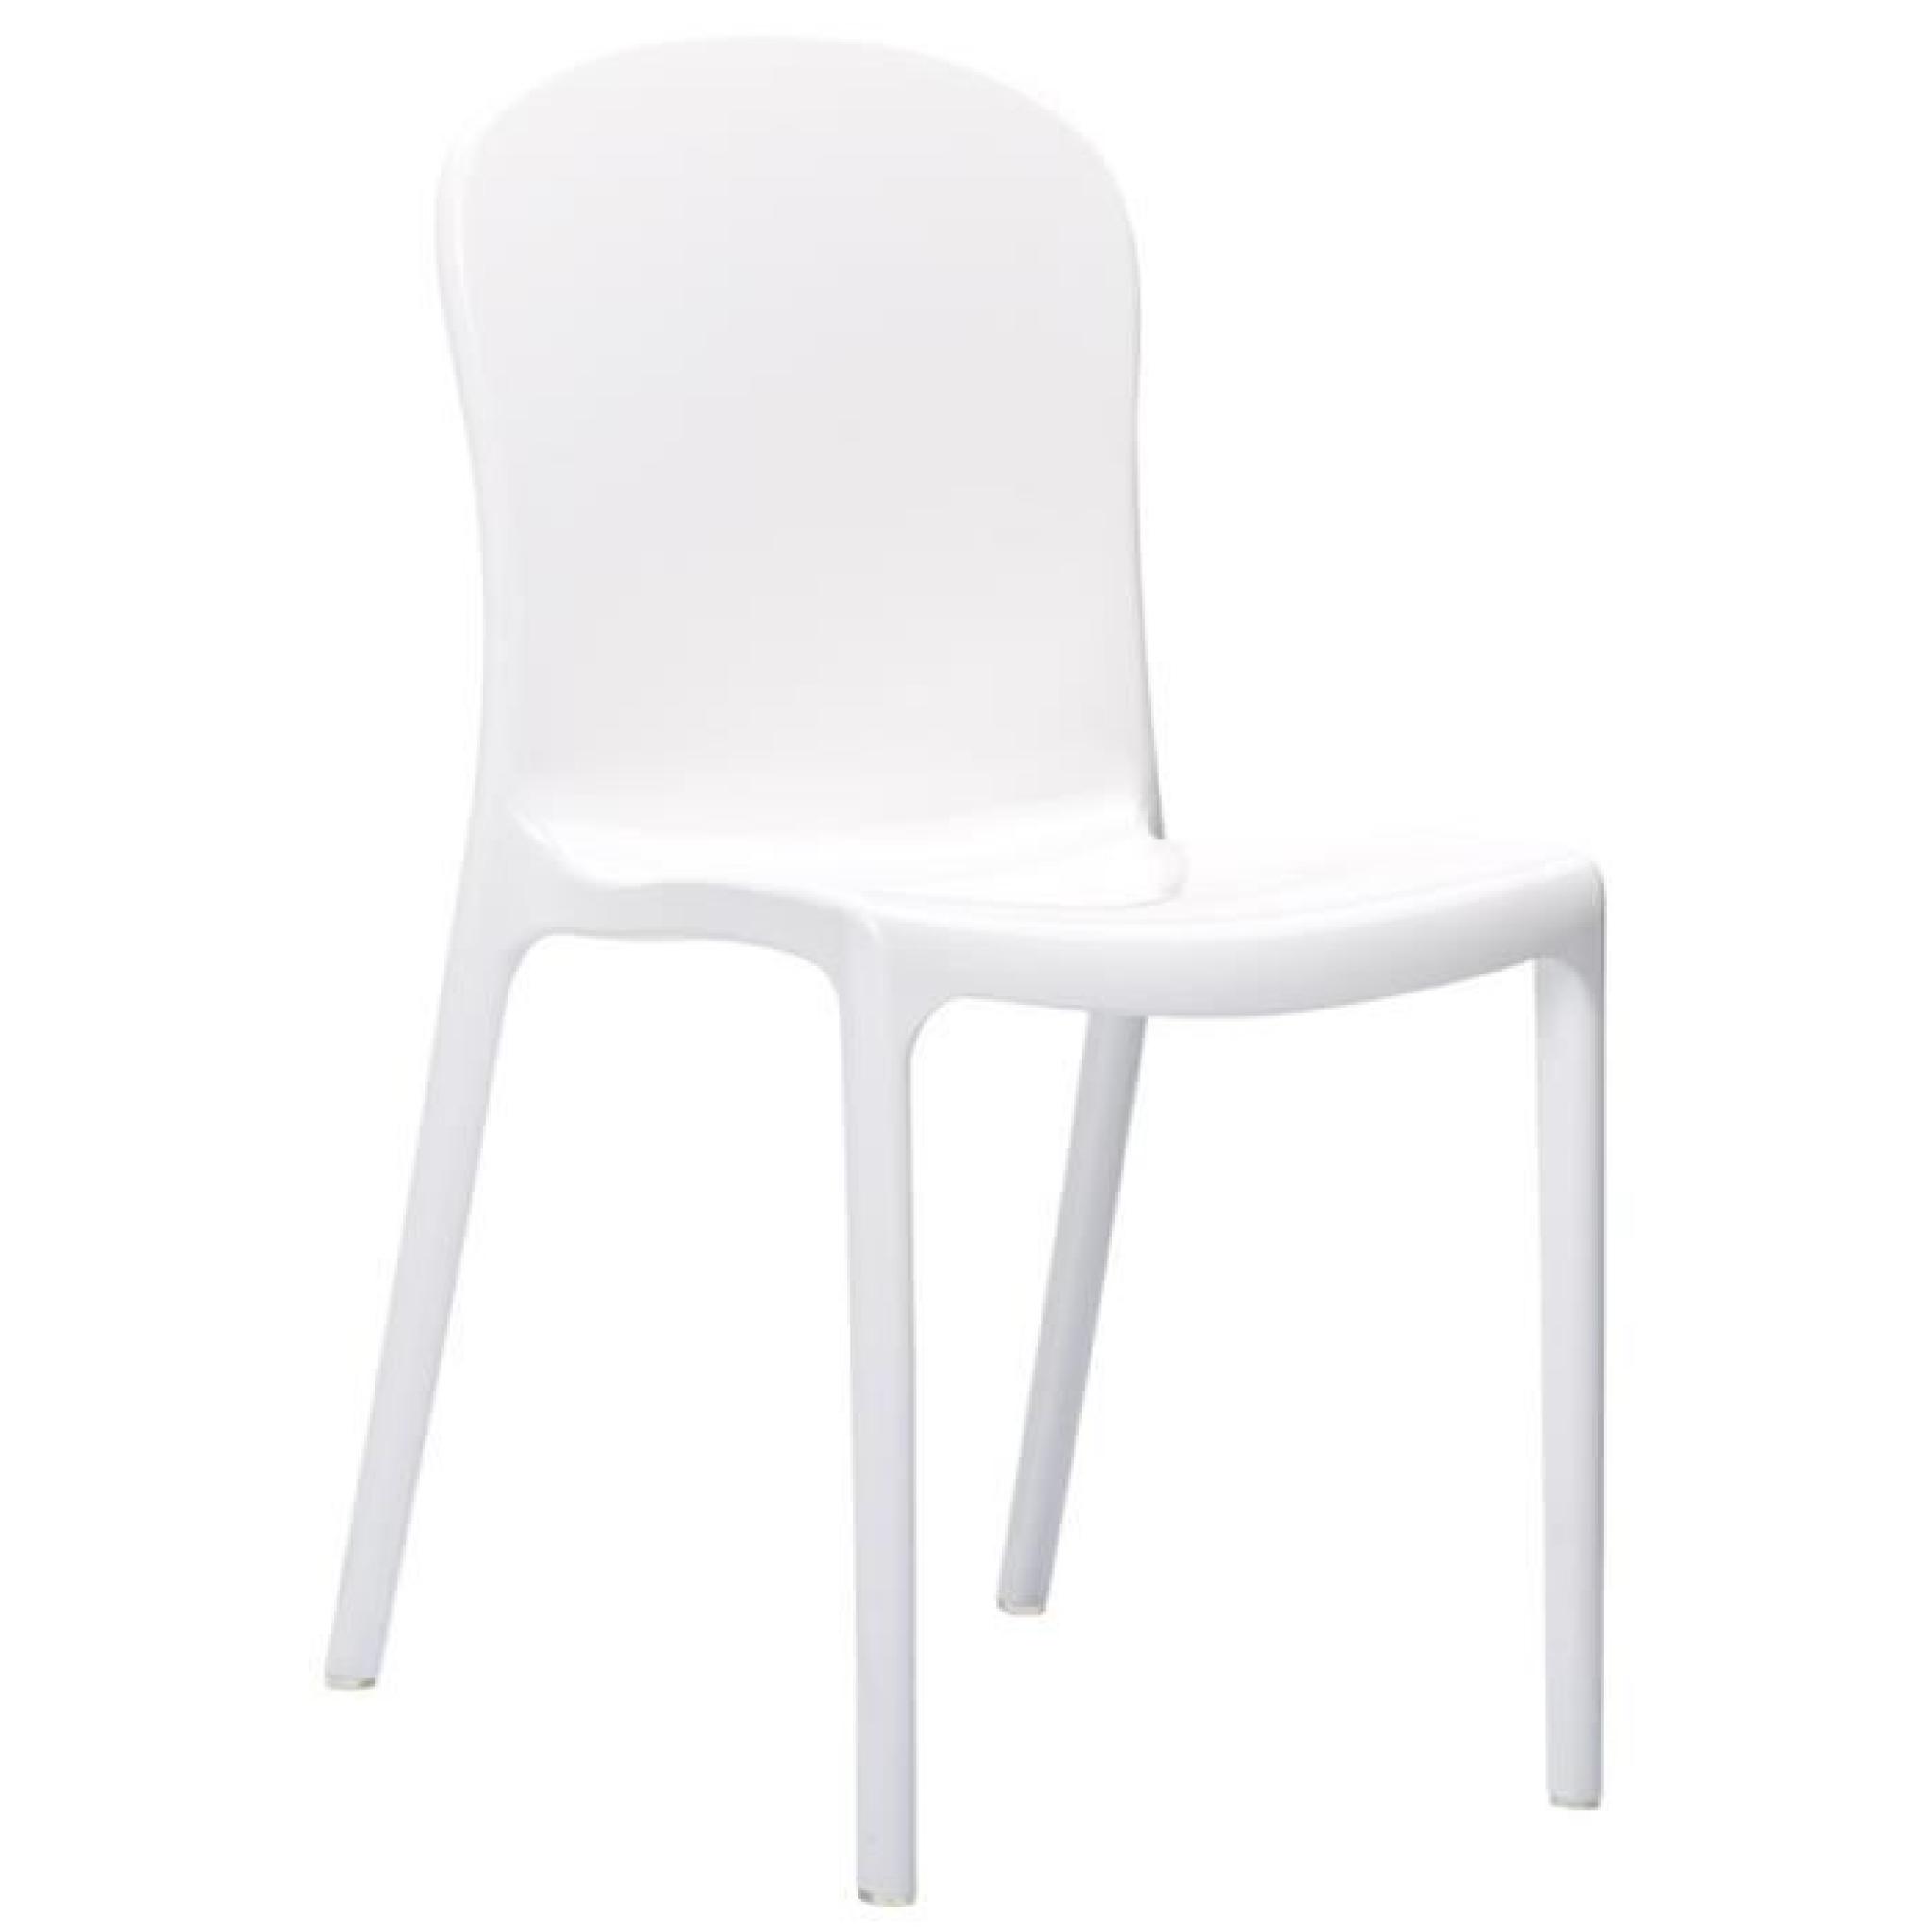 Chaise moderne 'YANG' en matière plastique blanche